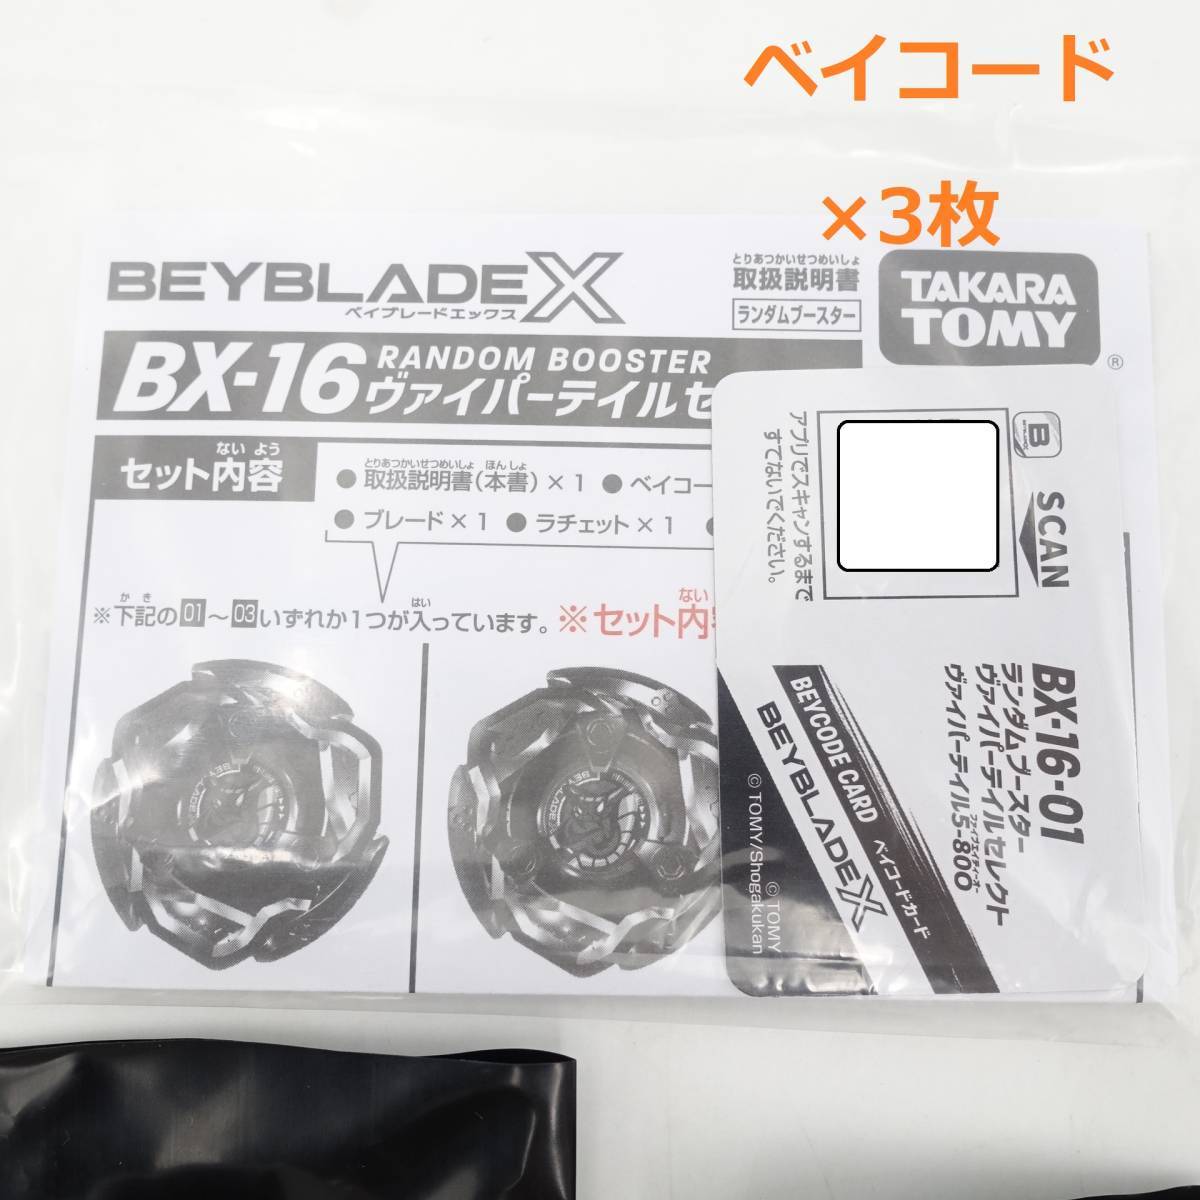 ベイブレードX BX-16 ランダムブースター ヴァイパーテイルセレクト 全3種セット ベイコード未使用 BEYBLADE タカラトミー/13095